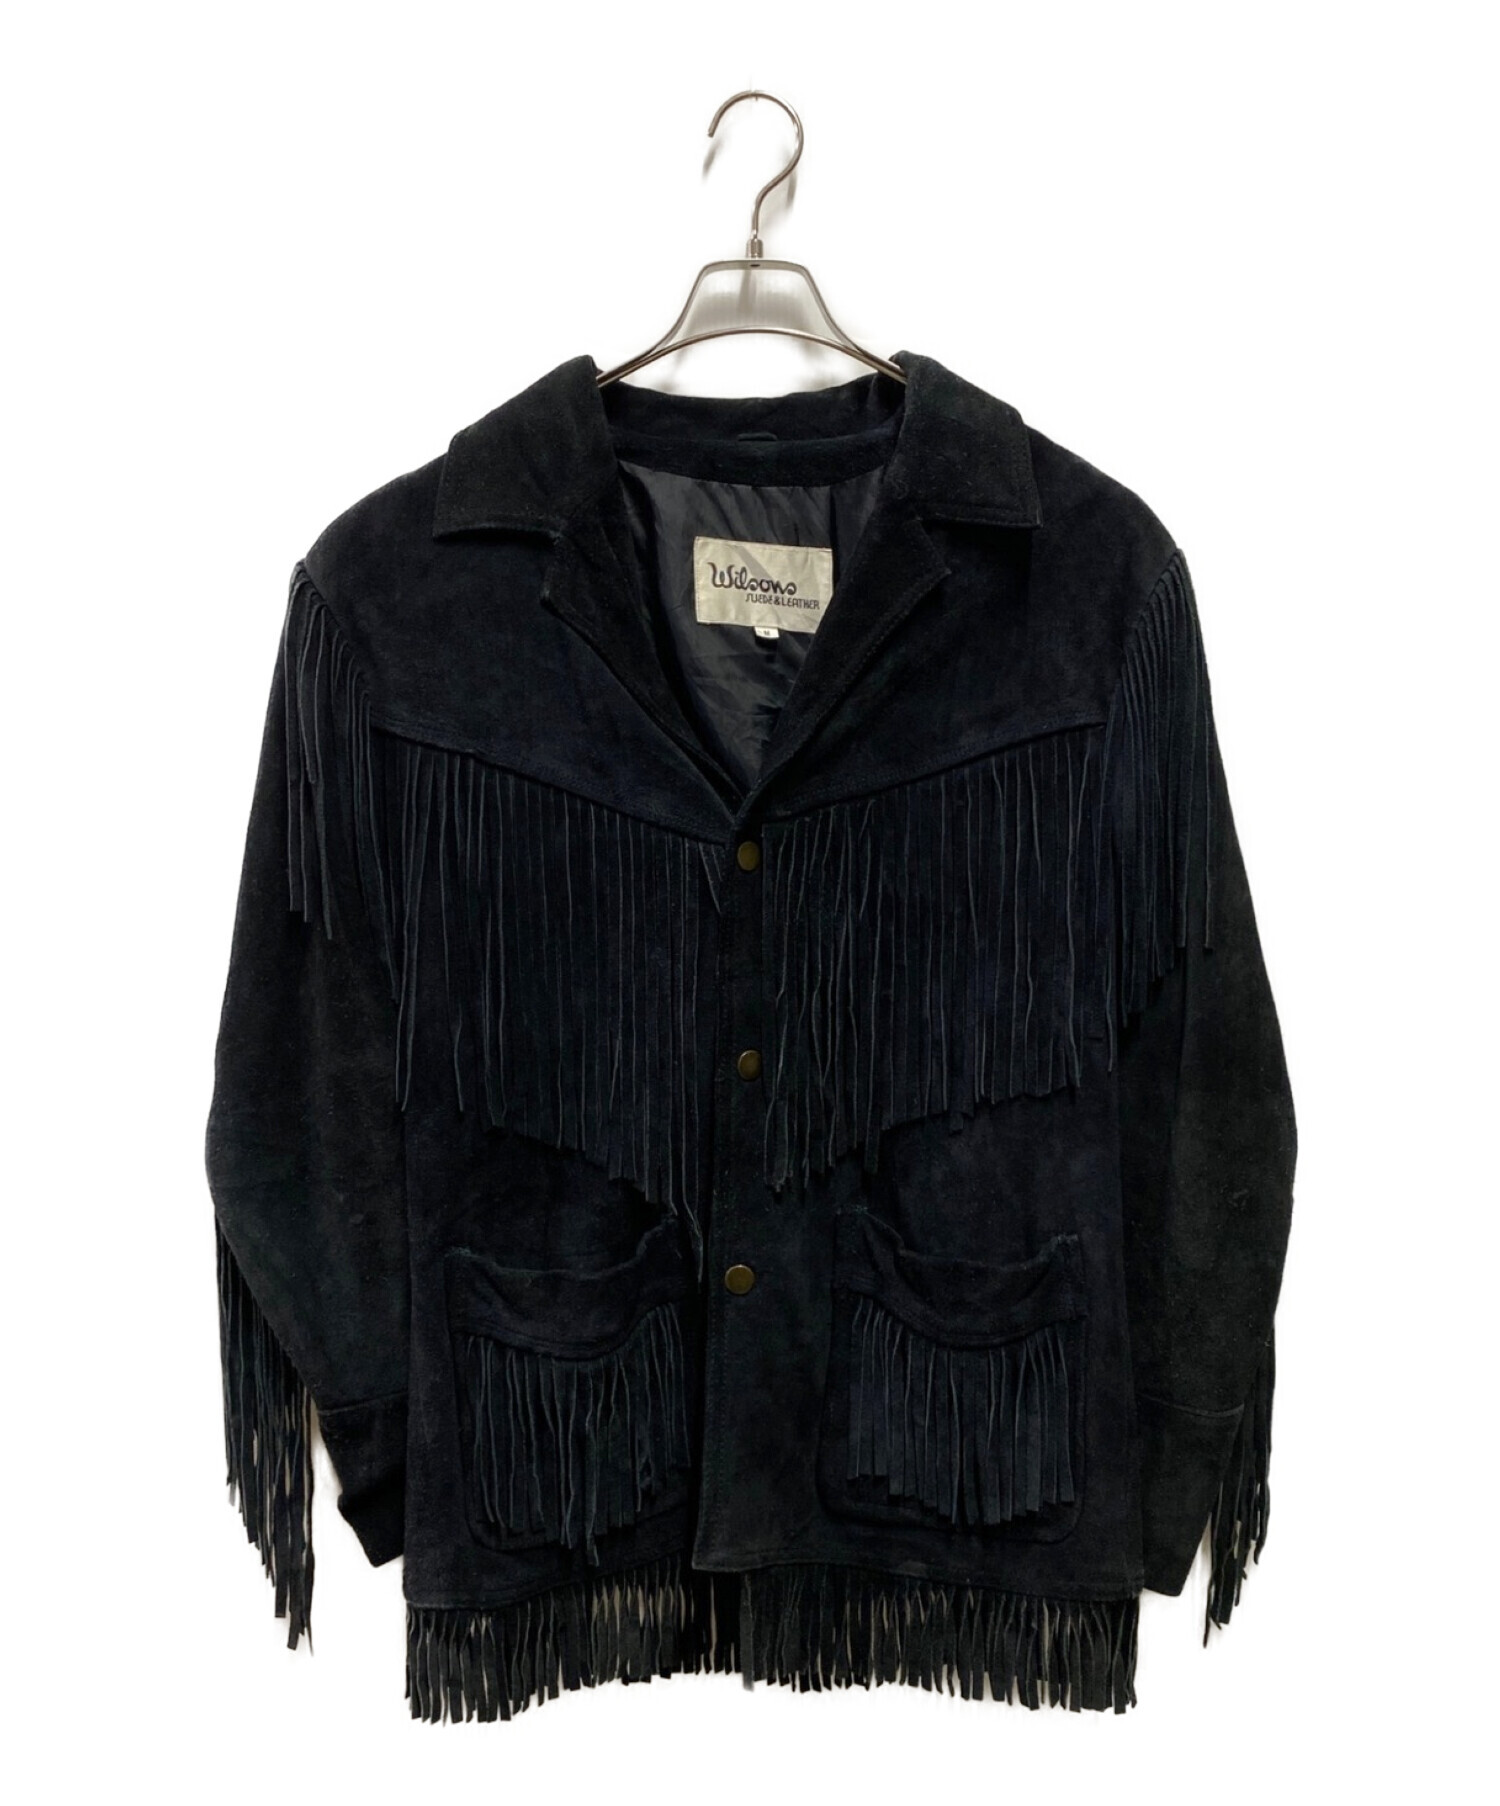 wilsons leather (ウィルソンズレザー) フリンジジャケット ブラック サイズ:M